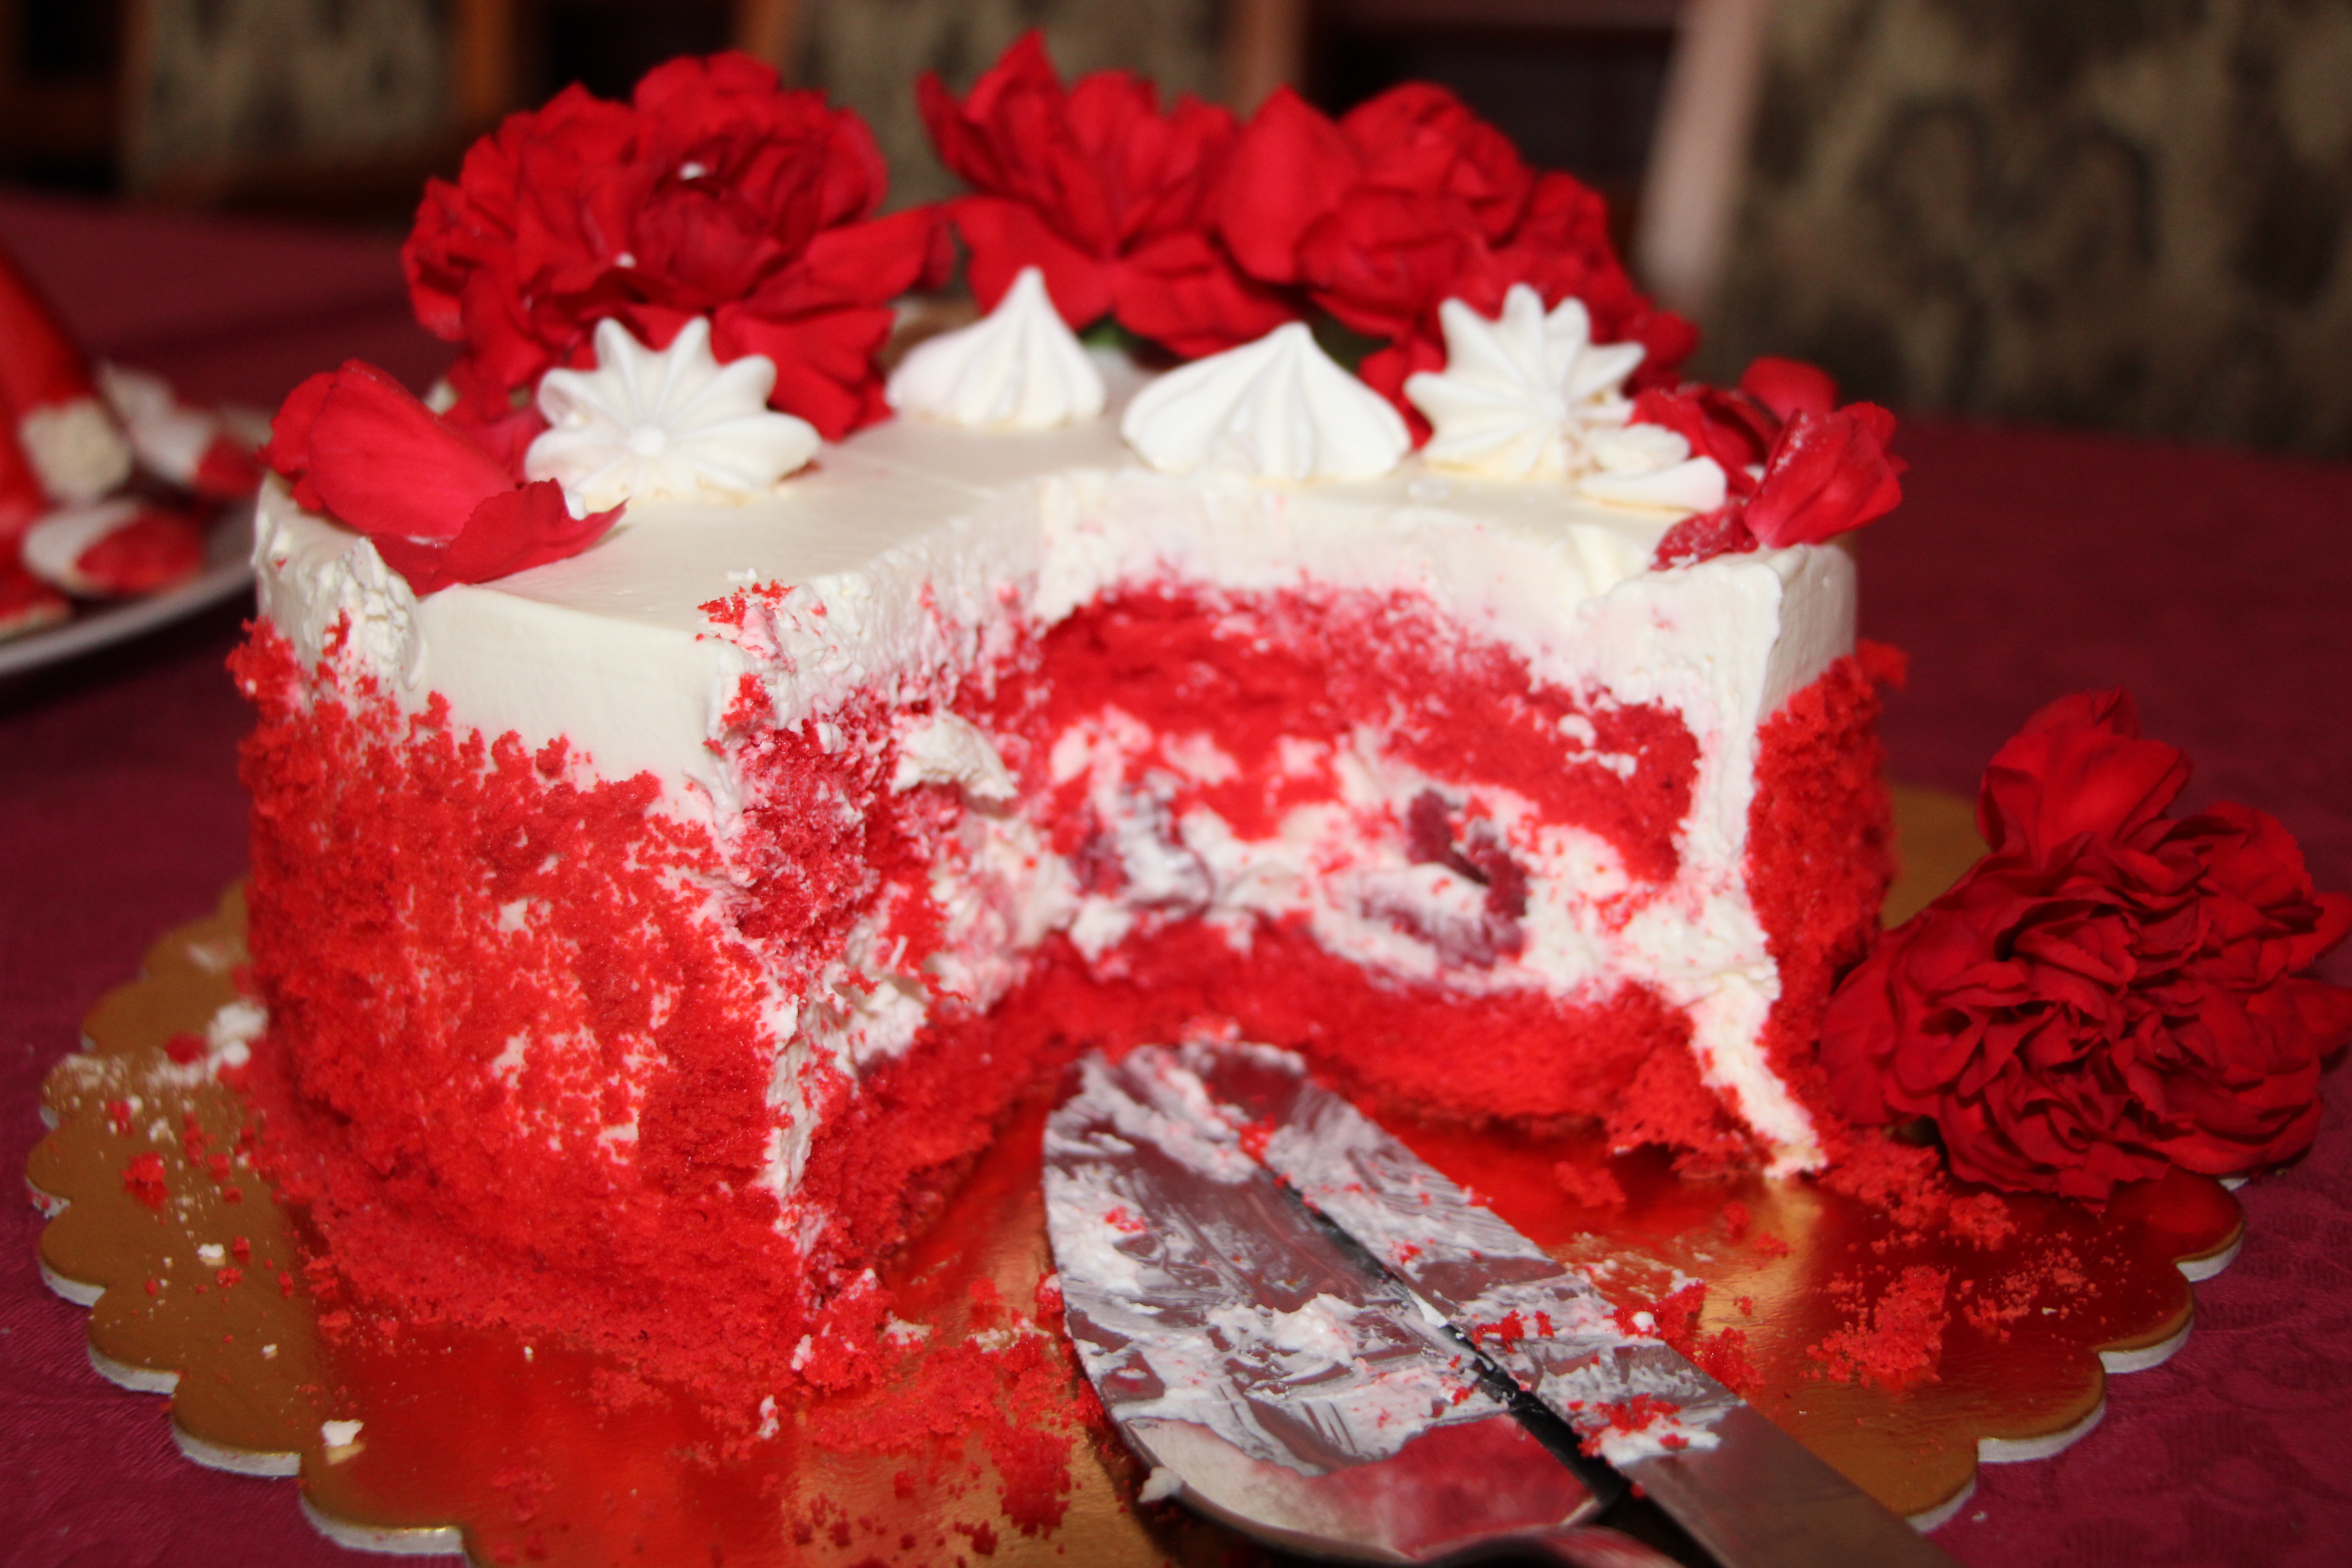 Zwycięskie ciasto w konkursie na ciasto biało-czerwone